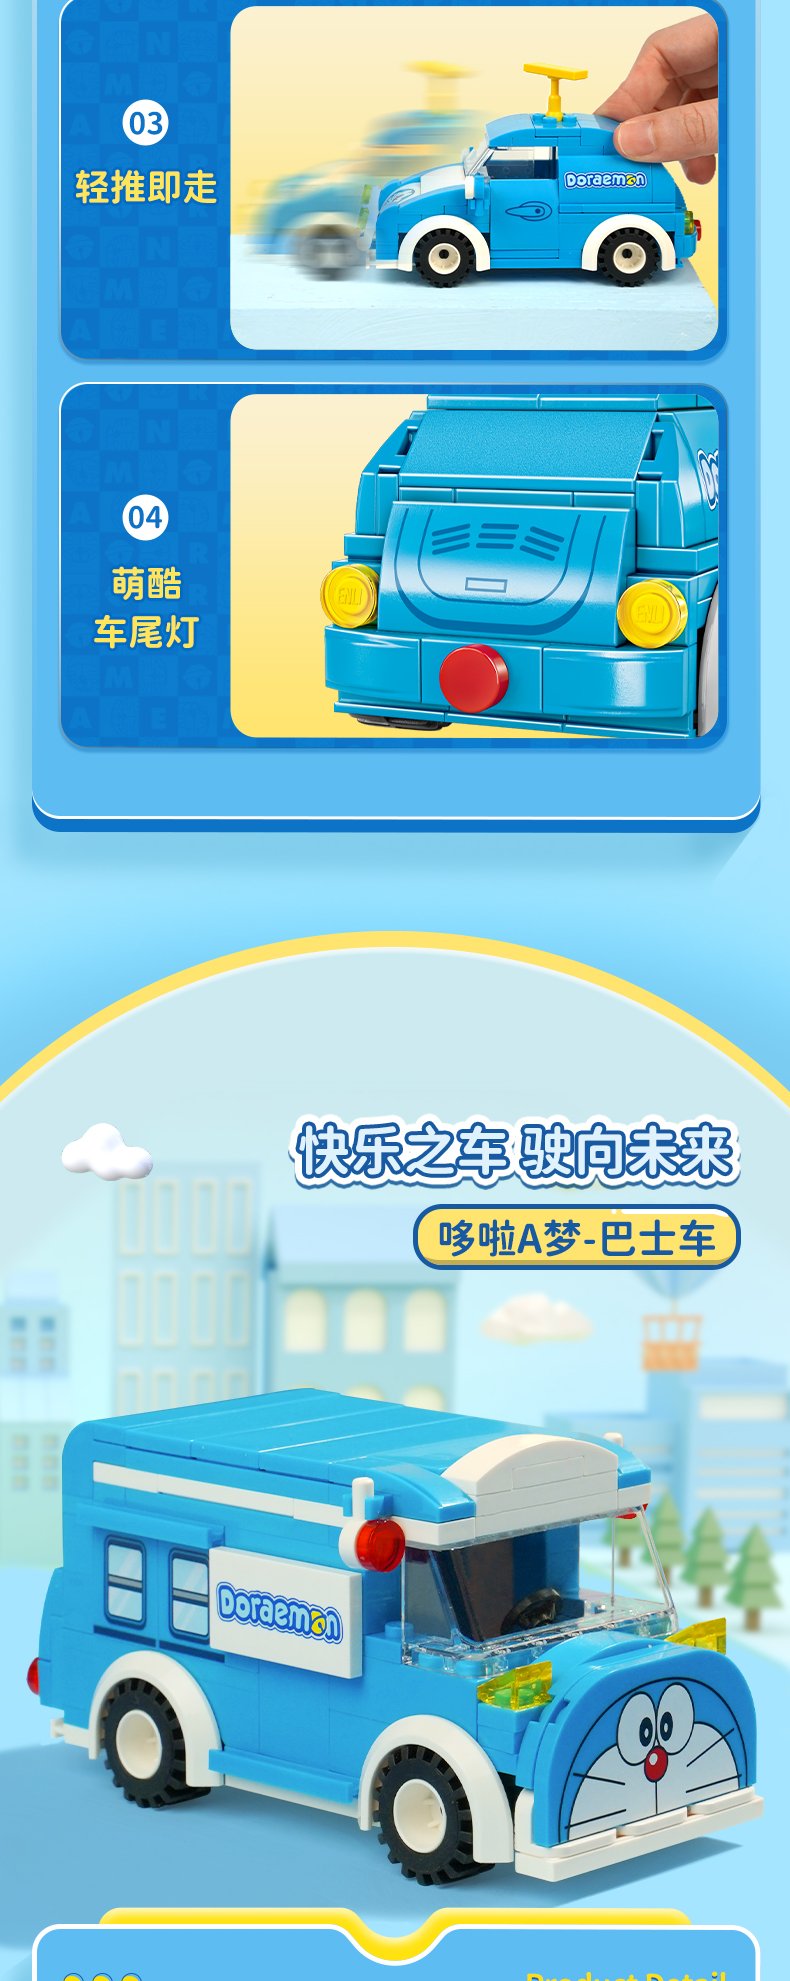 Keeppley K20407 Doraemon Bus blocs de construction ensemble de jouets